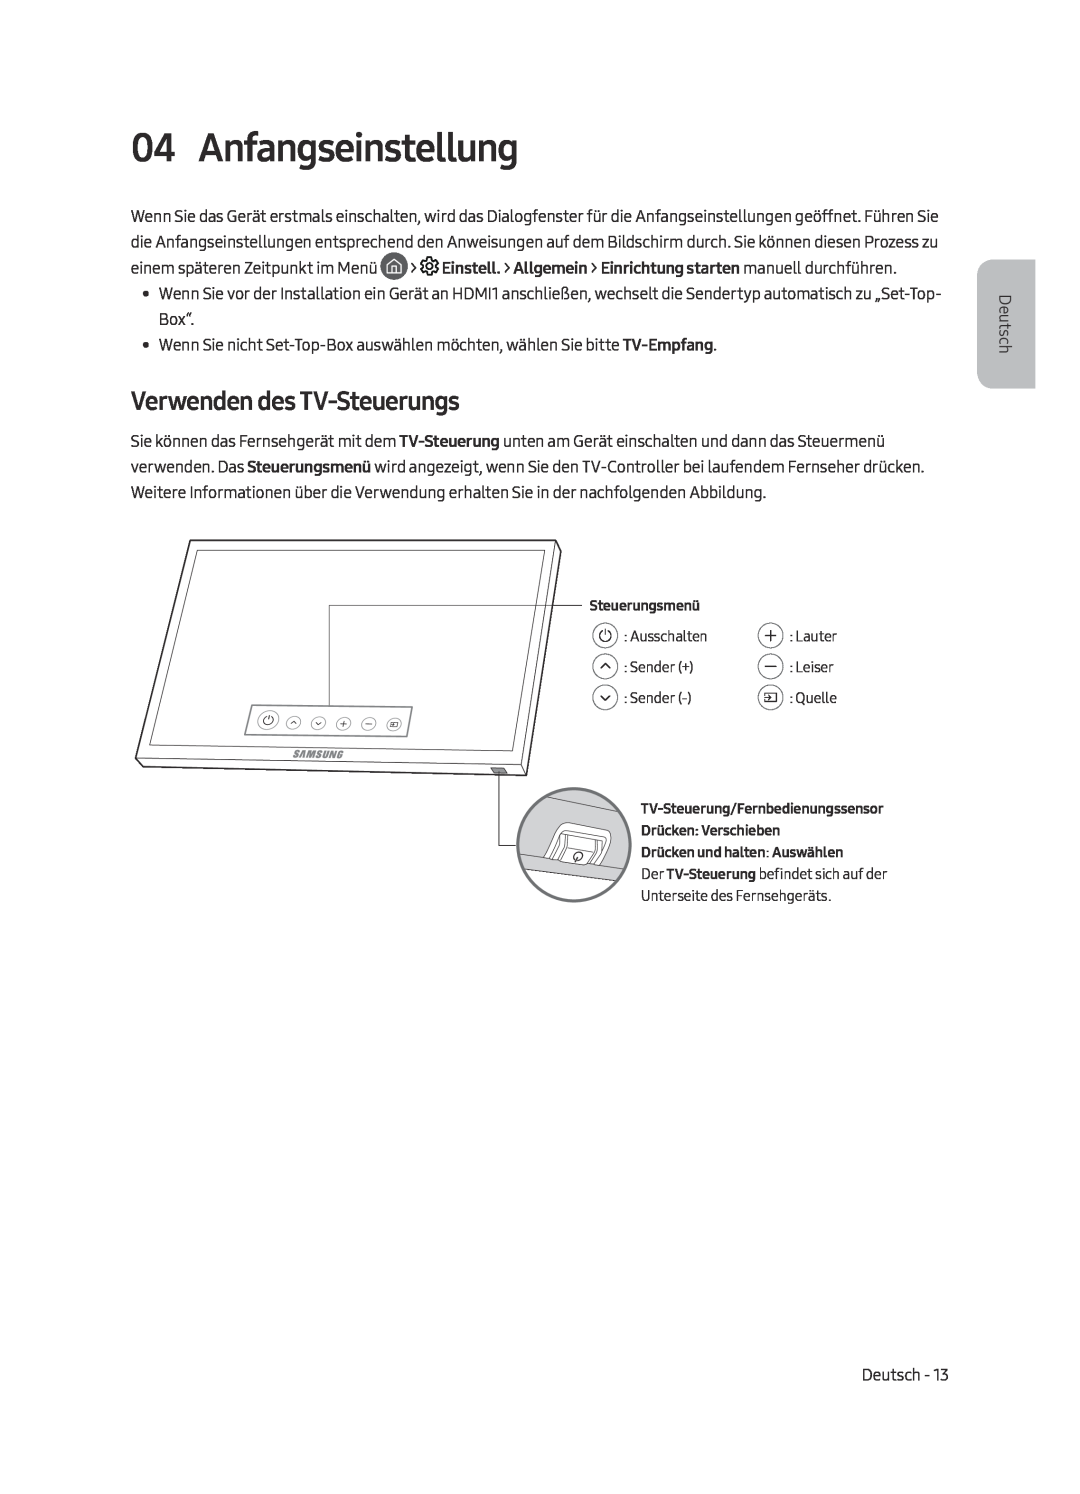 Samsung UE55MU6470UXXU, UE40MU6479UXZG, UE65MU6449UXZG, UE40MU6449UXZG manual Anfangseinstellung, Verwenden des TV-Steuerungs 